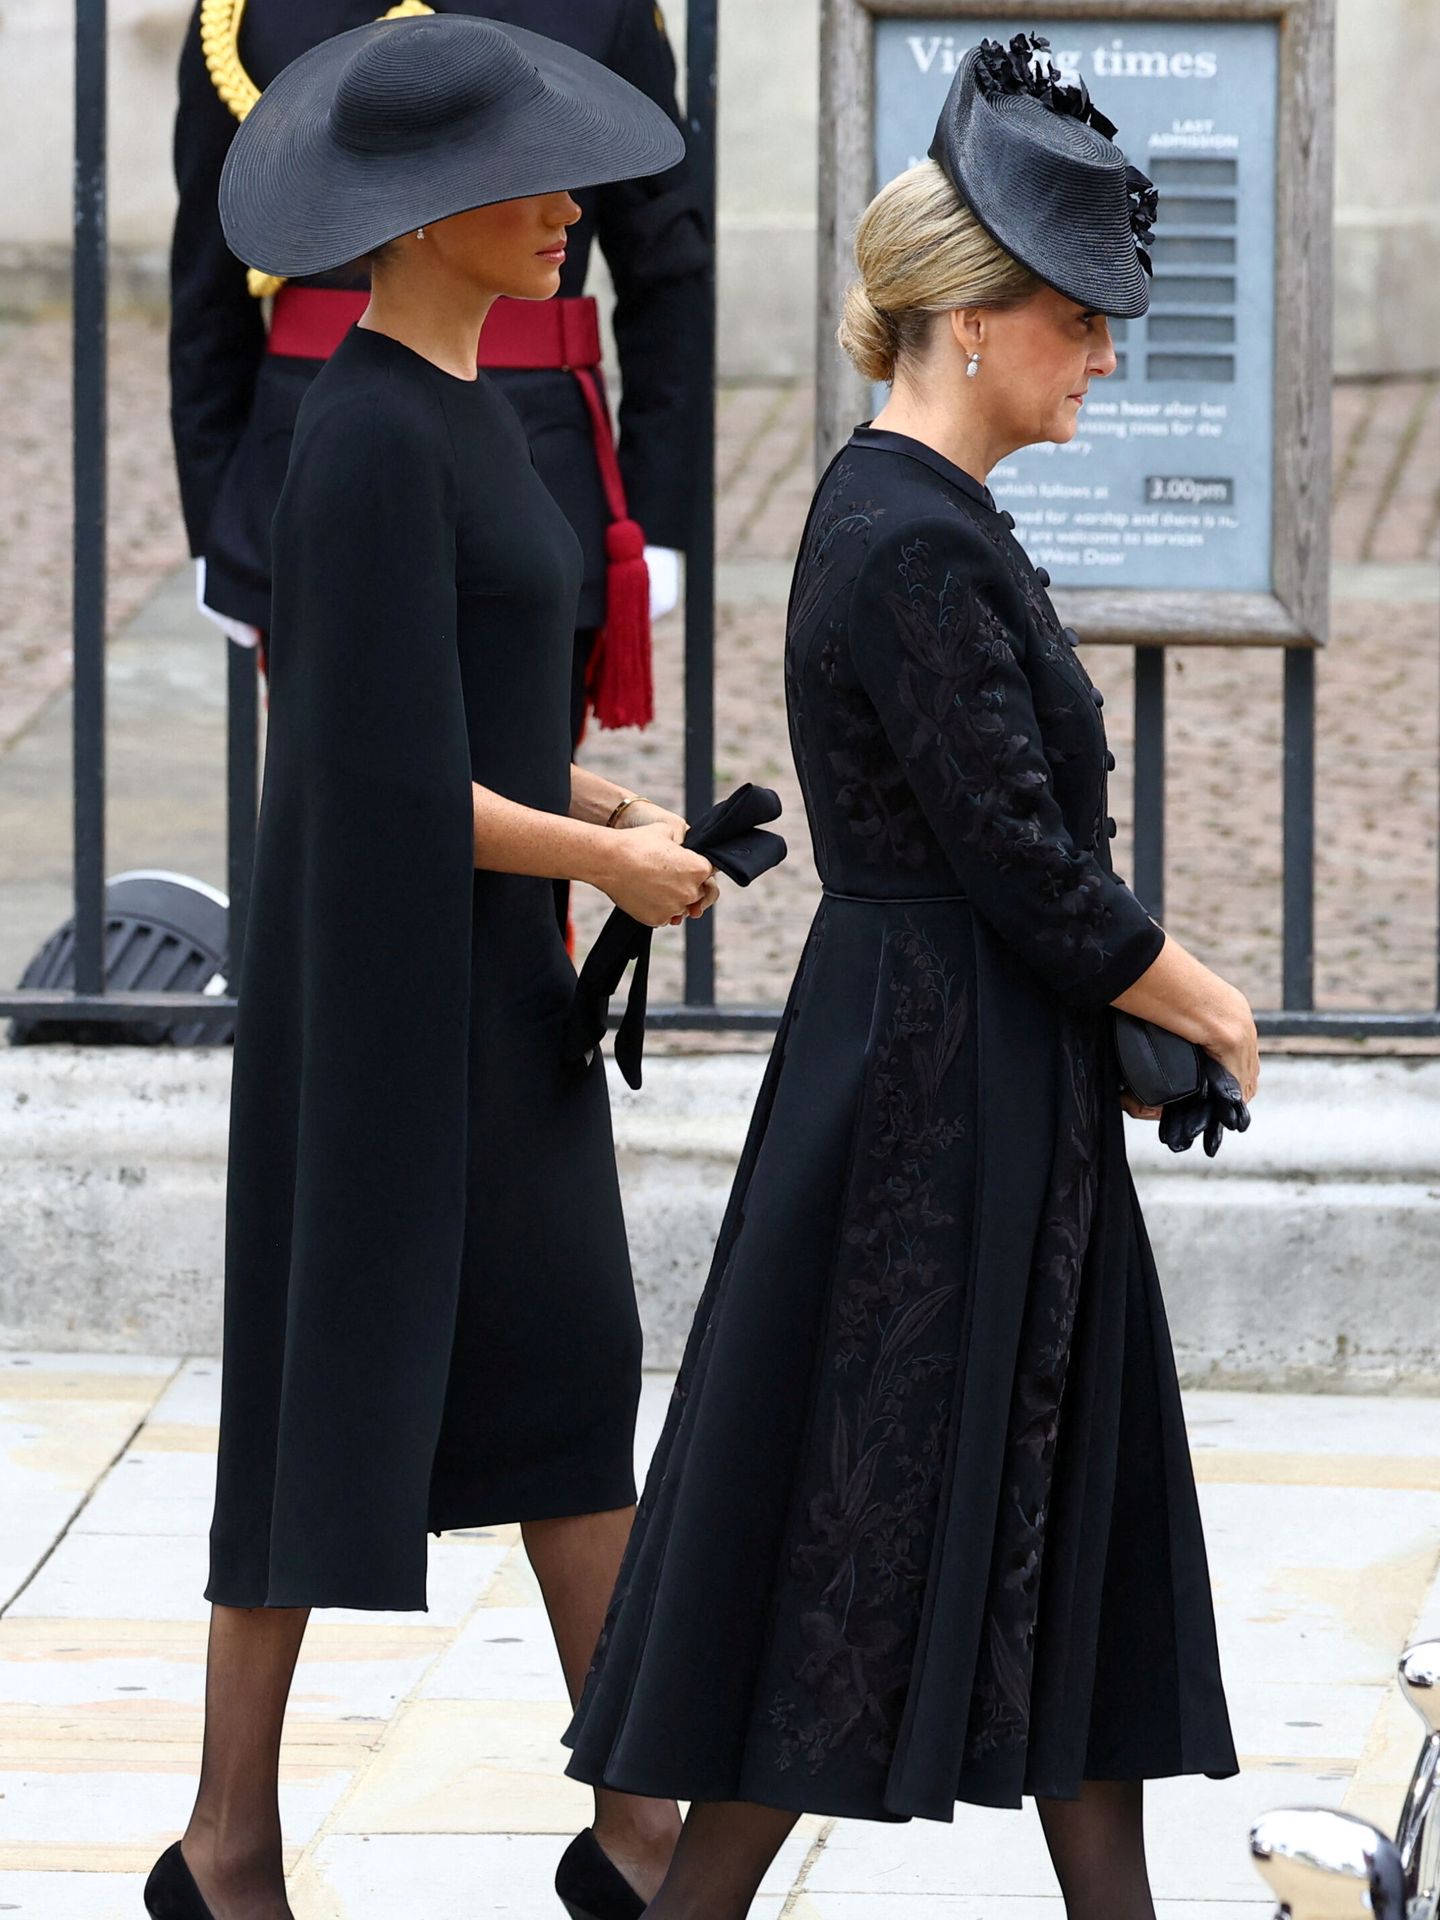 La relación entre ambas duquesas ha tenido altibajos. (Reuters/Pool/Hannah McKay)